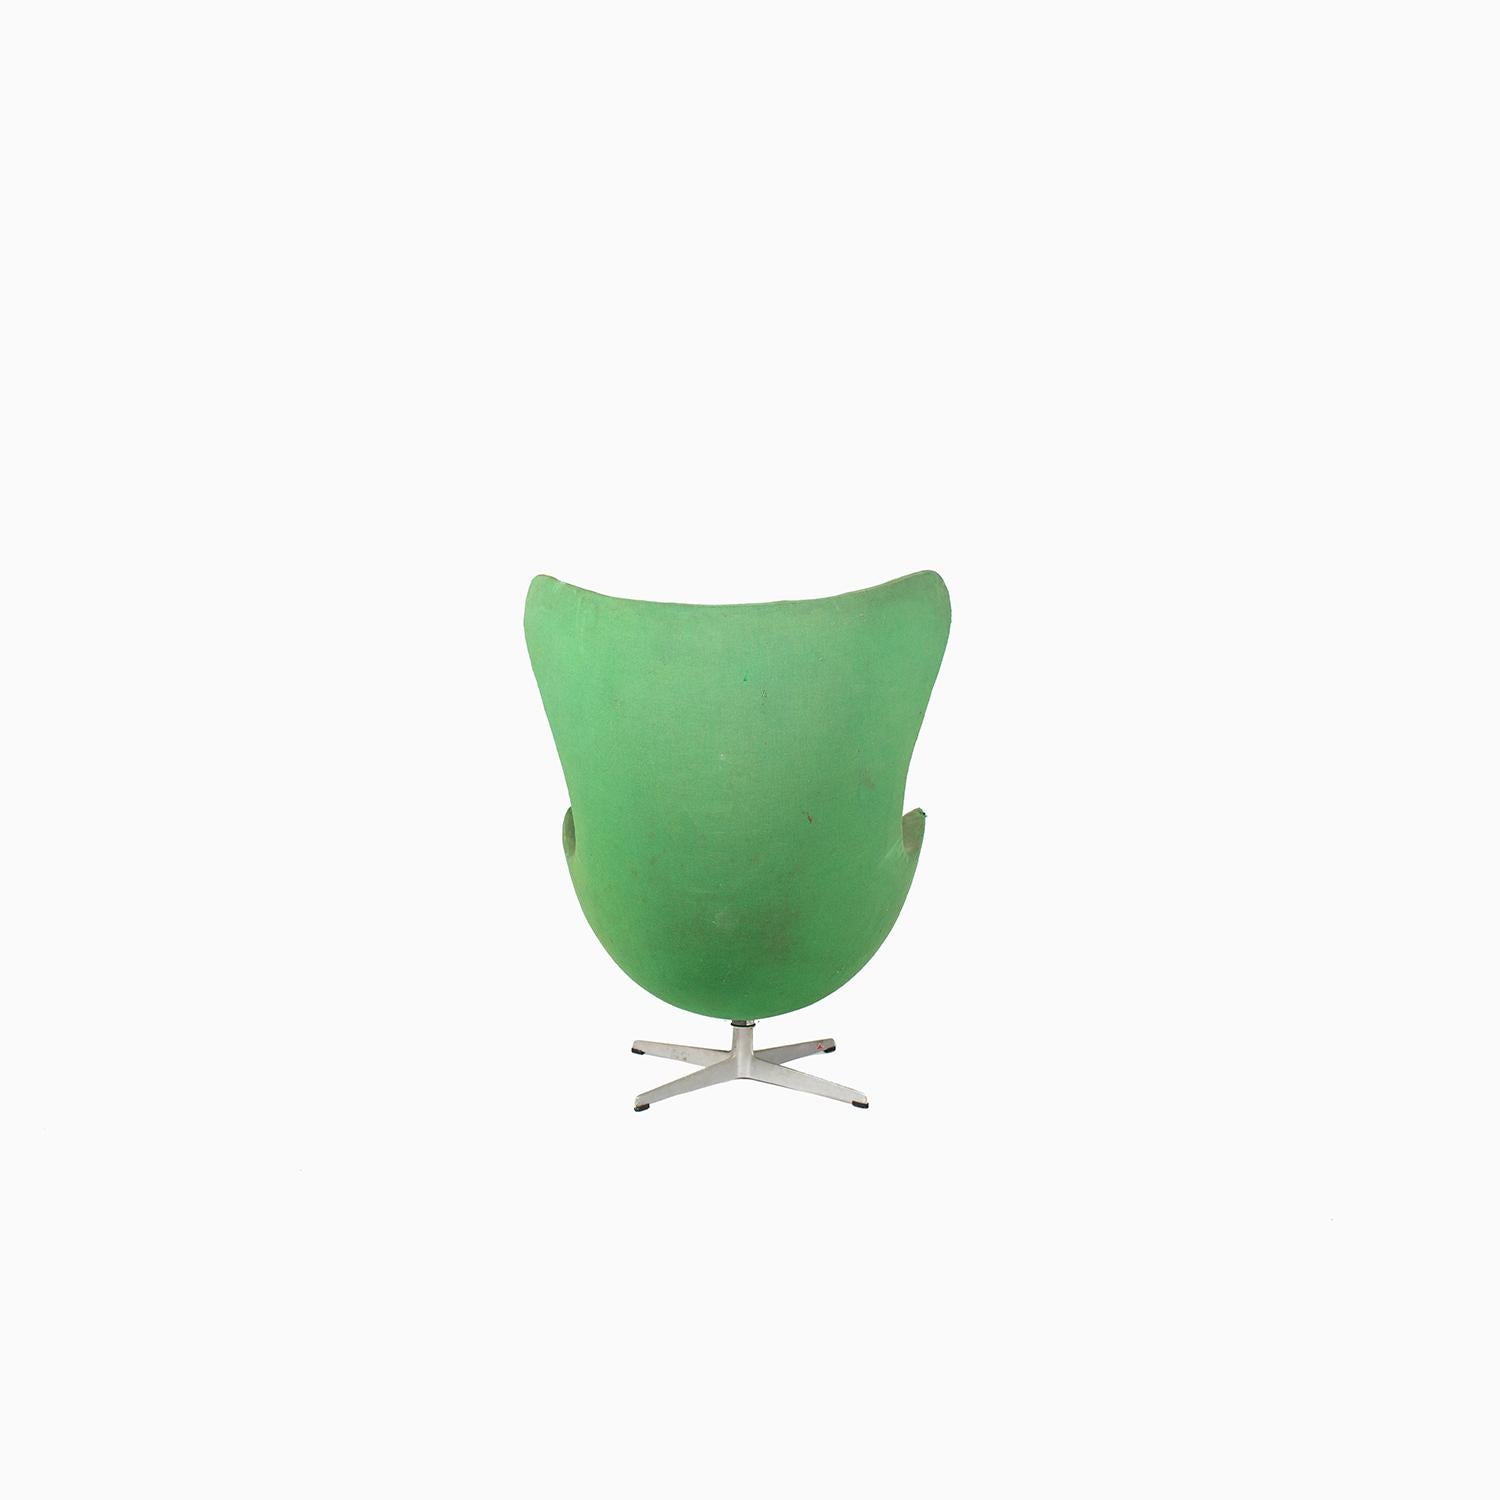 20th Century Danish Modern Arne Jacobsen Egg Chair